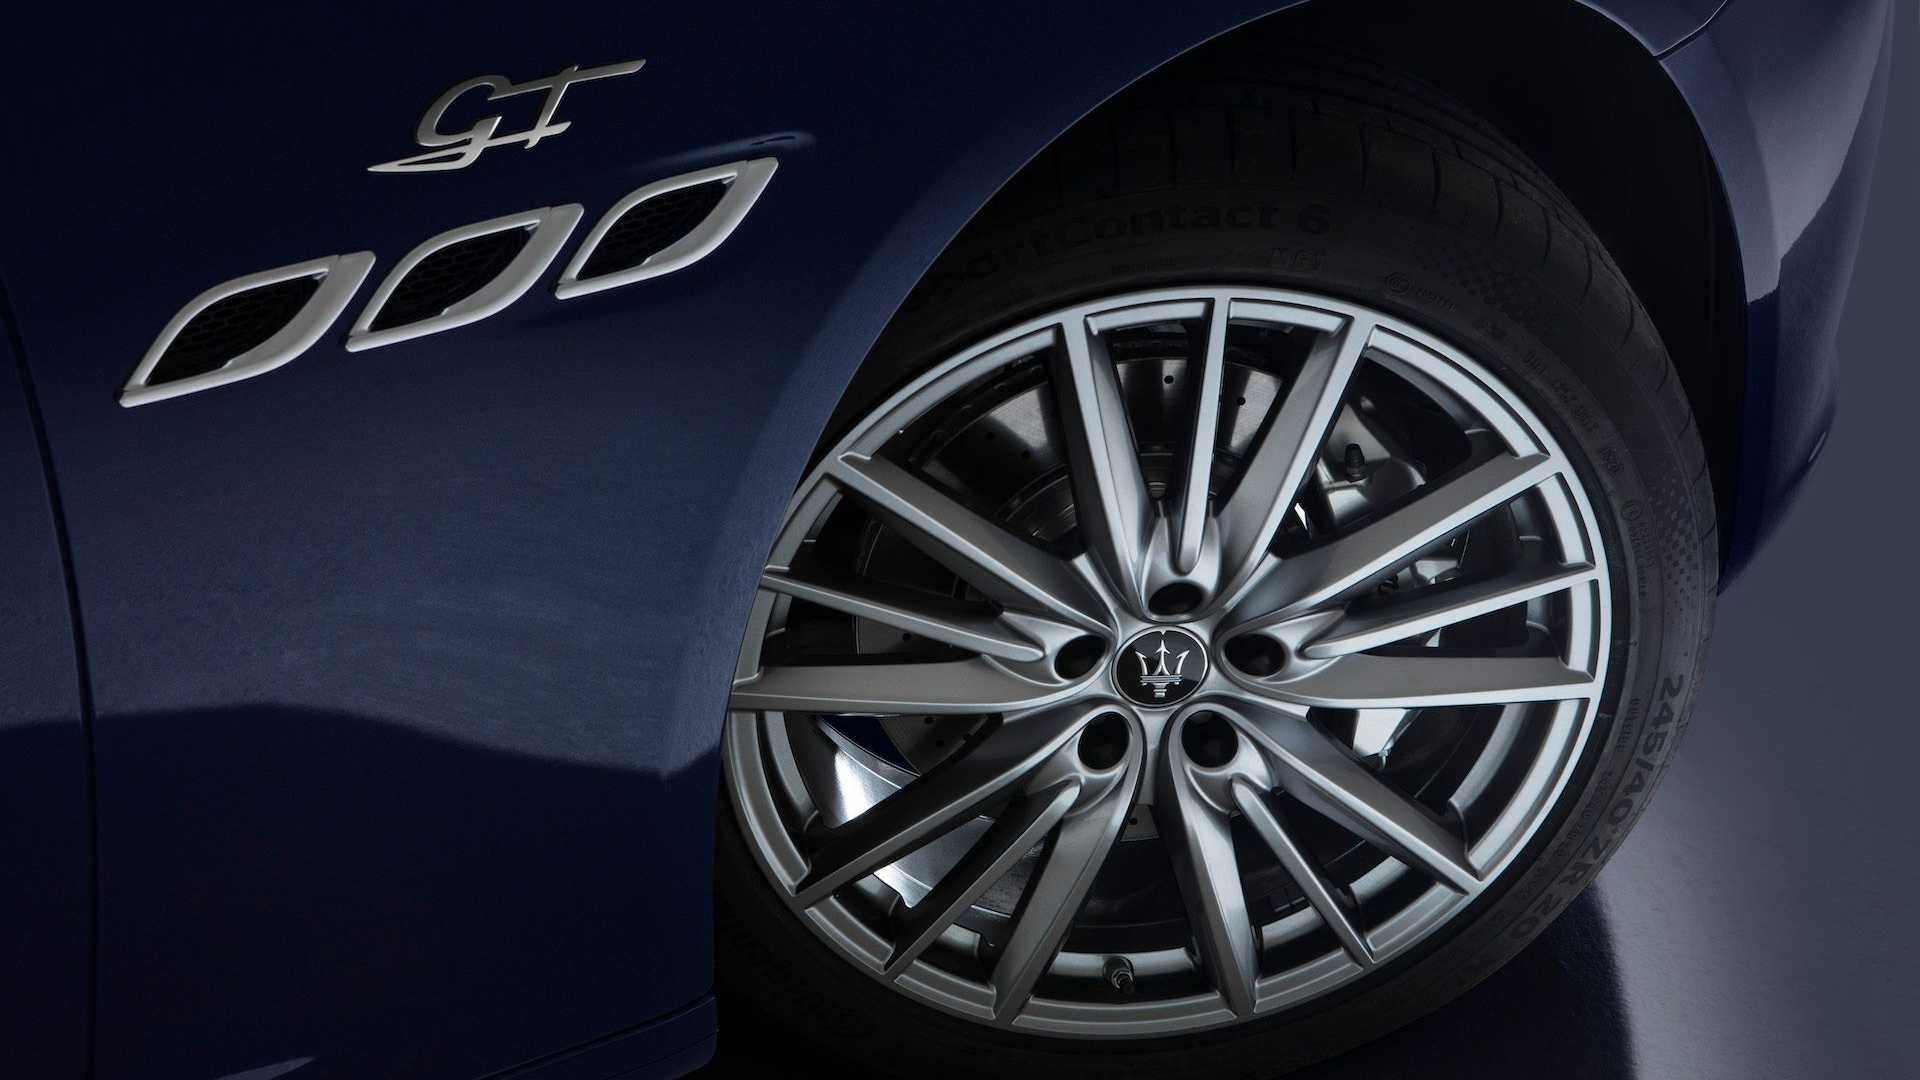 Samochody Maserati na 2022 rok modelowy. Co przygotował włoski producent?